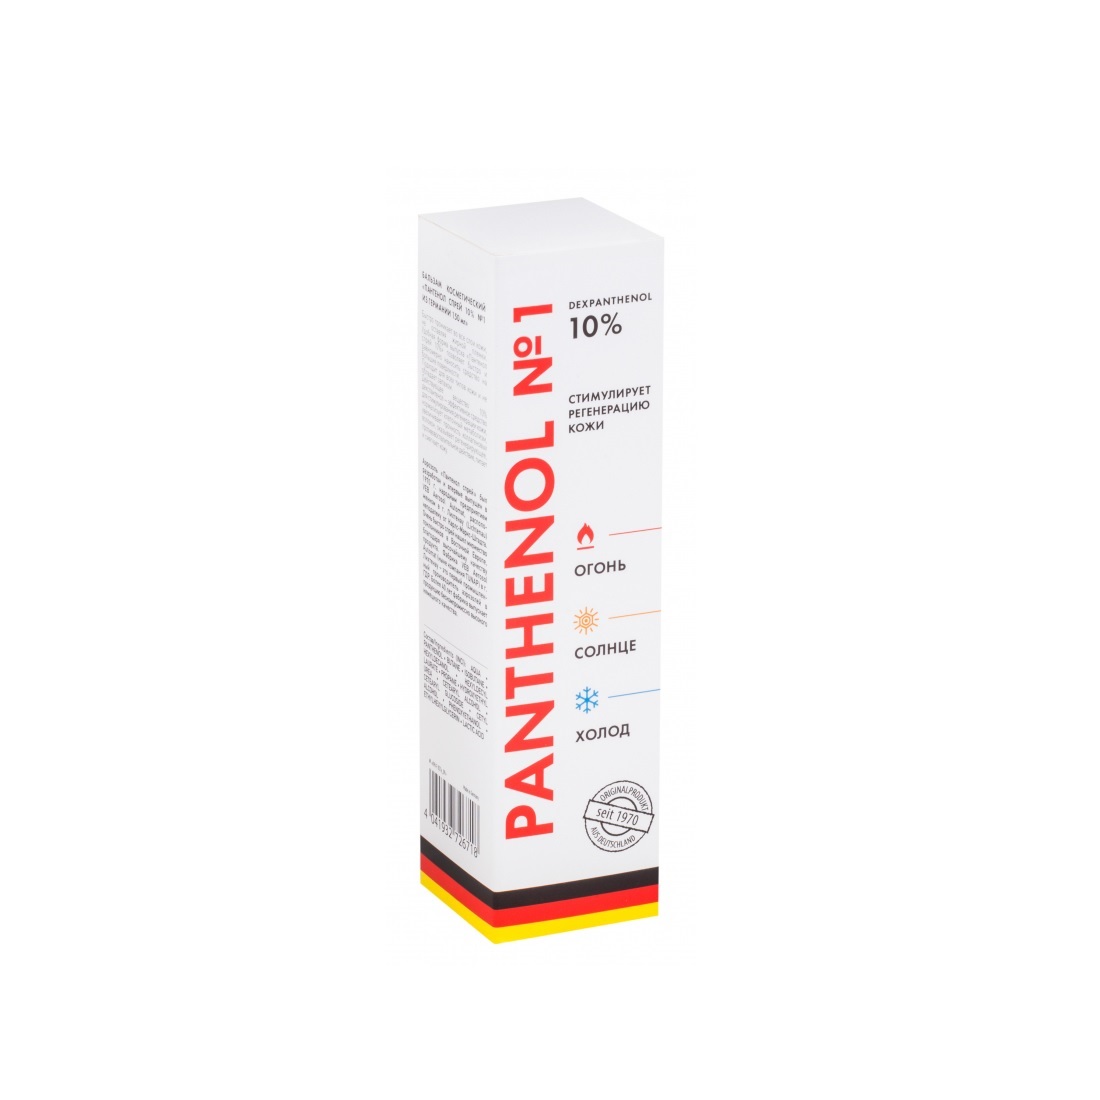 Купить Пантенол бальзам косметический спрей 10% №1 из Германии фл. 150мл, Tunap Cosmetics Group DE